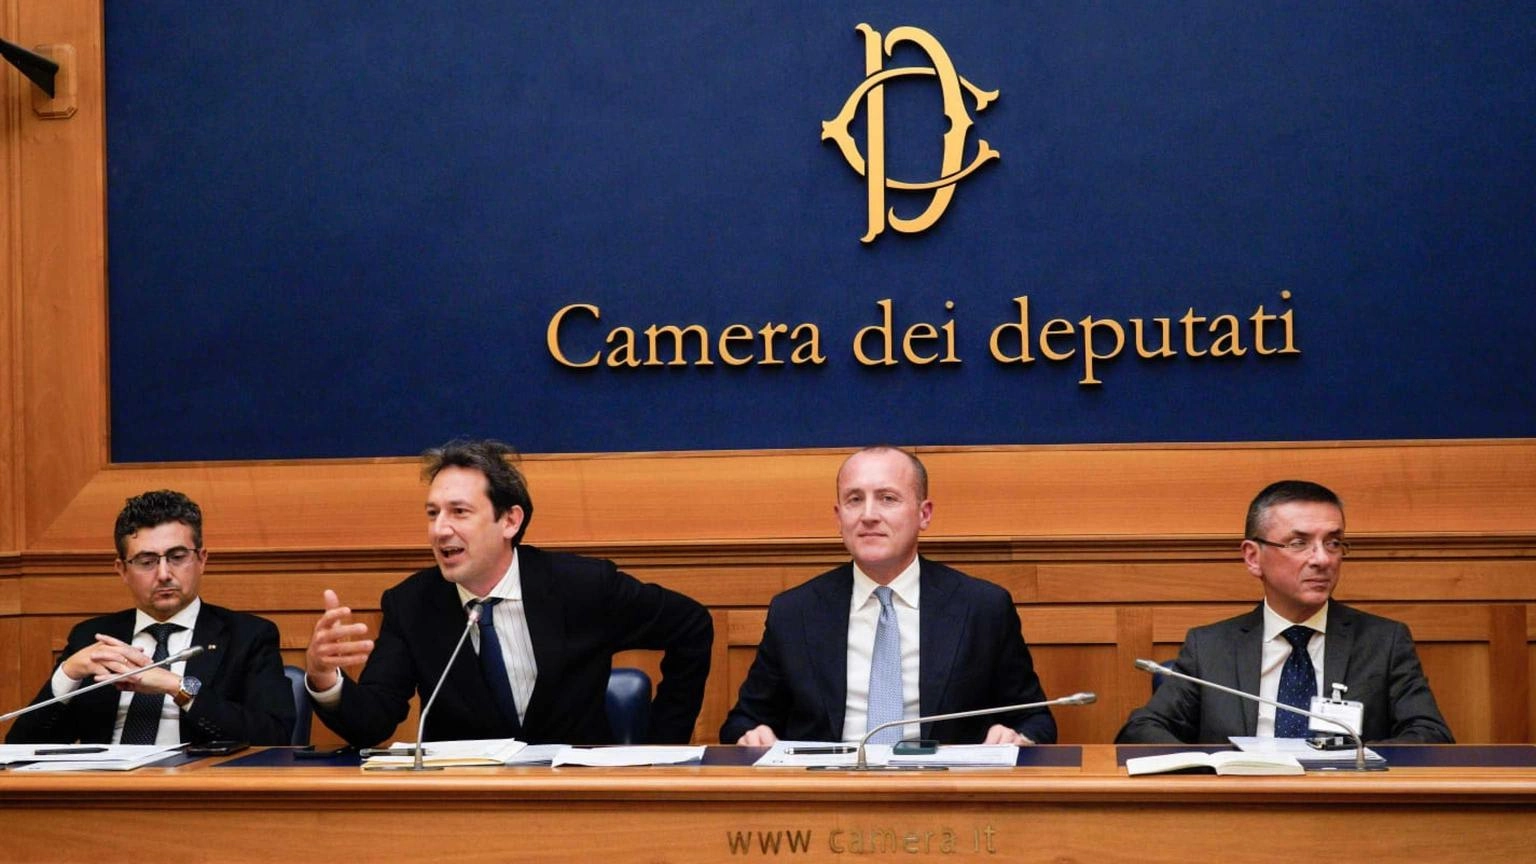 Lampugnale (Confindustria): "Campania, 10 punti per lo sviluppo"